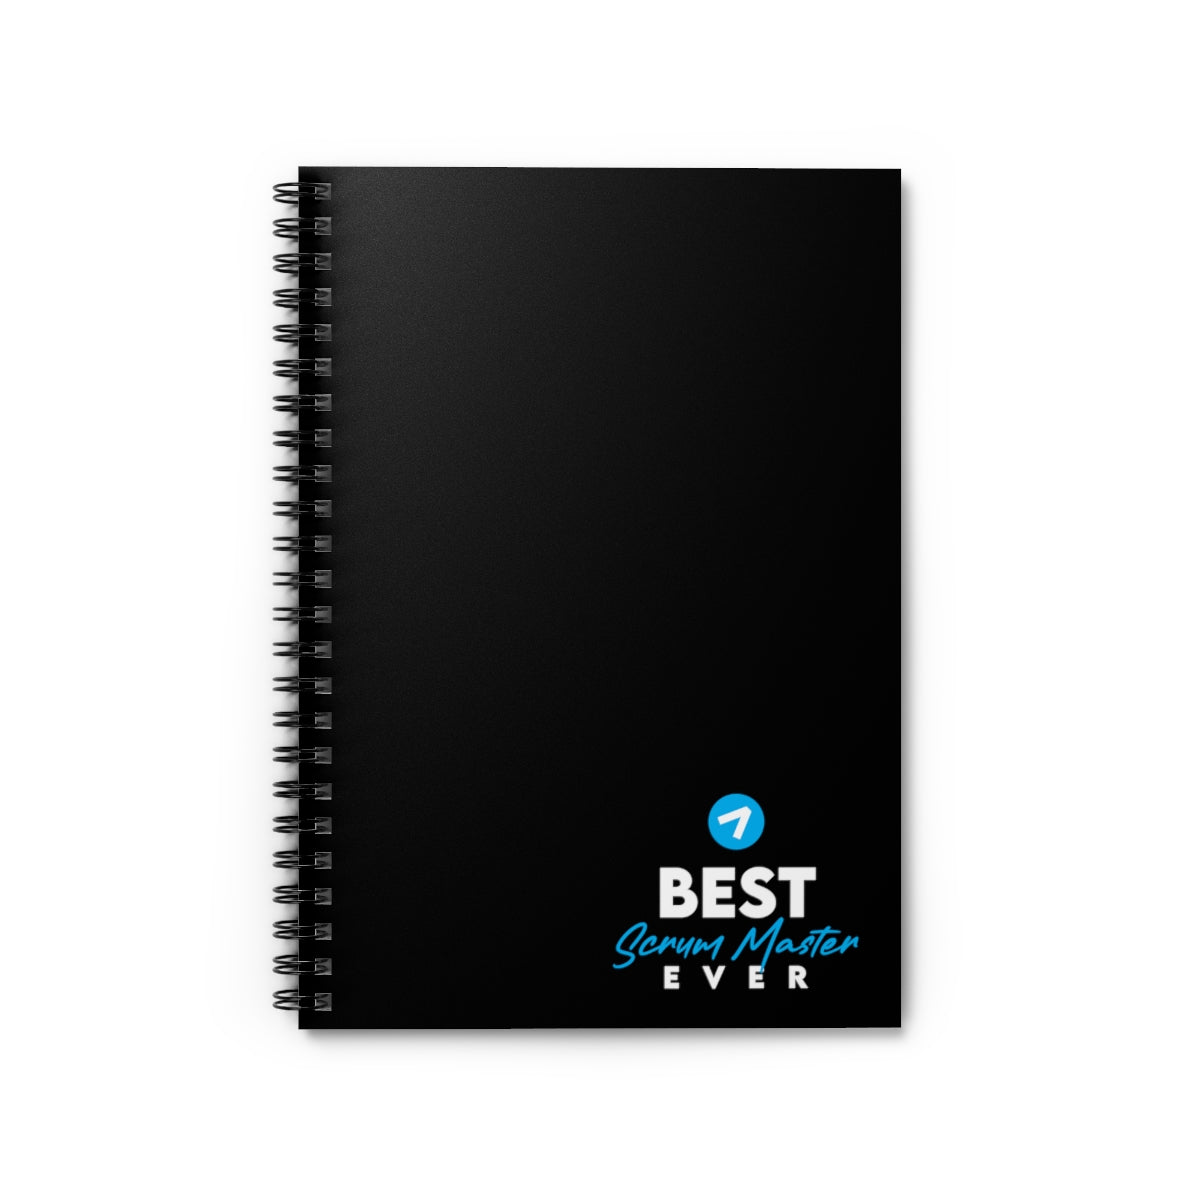 Best Scrum Master ever - Black Blue - Spiral Notebook - Ruled Line